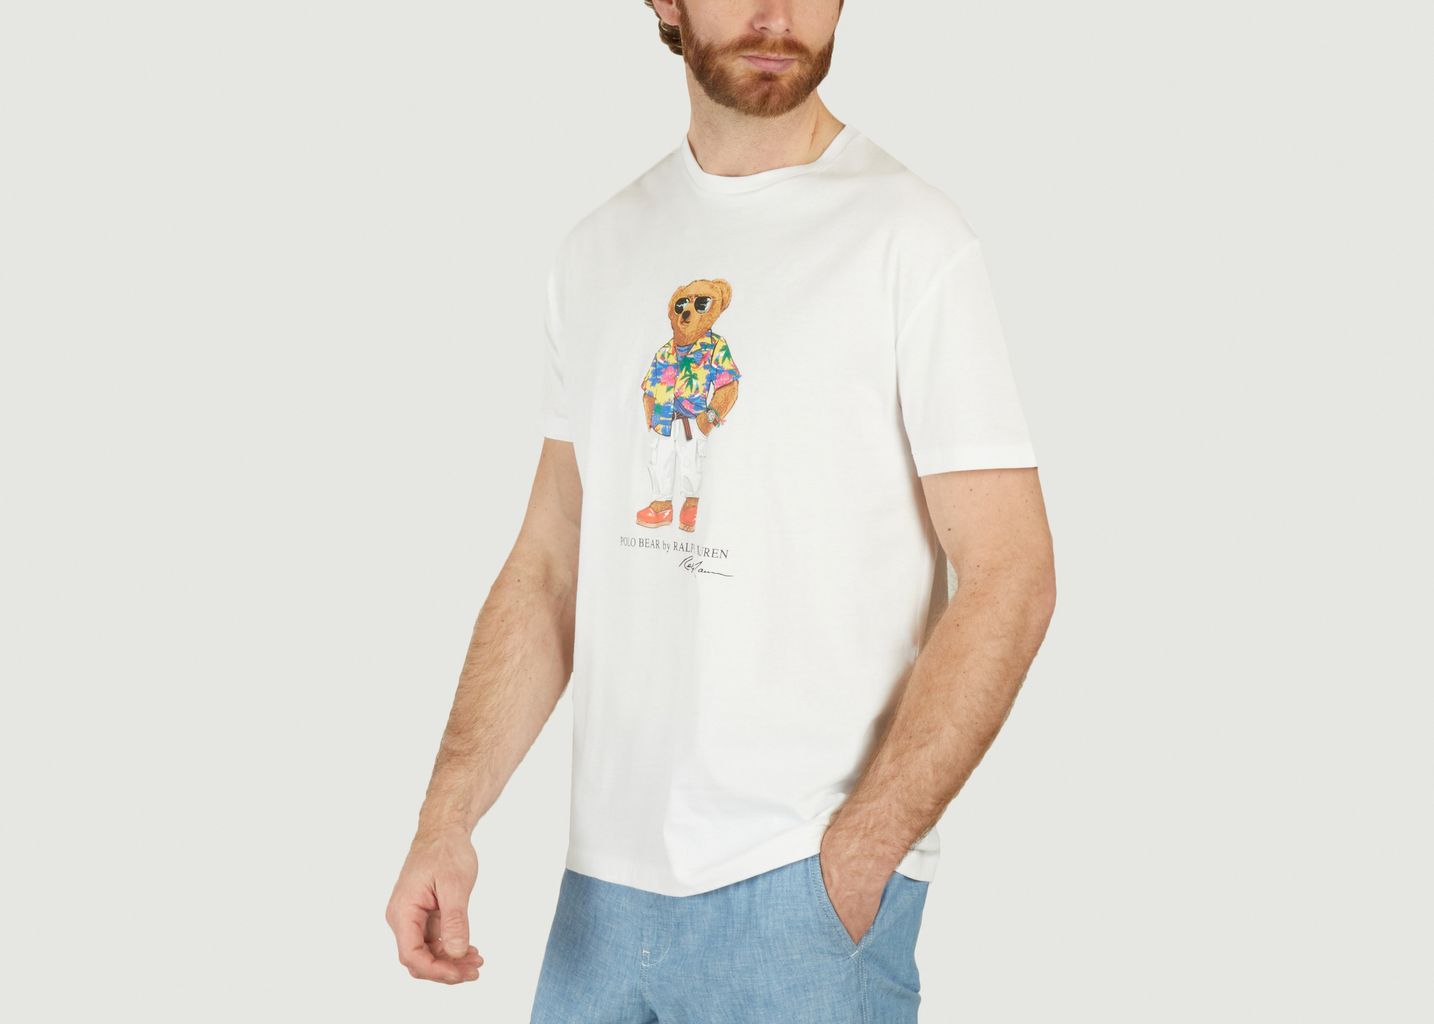 Beach Club Bear T-shirt - Polo Ralph Lauren